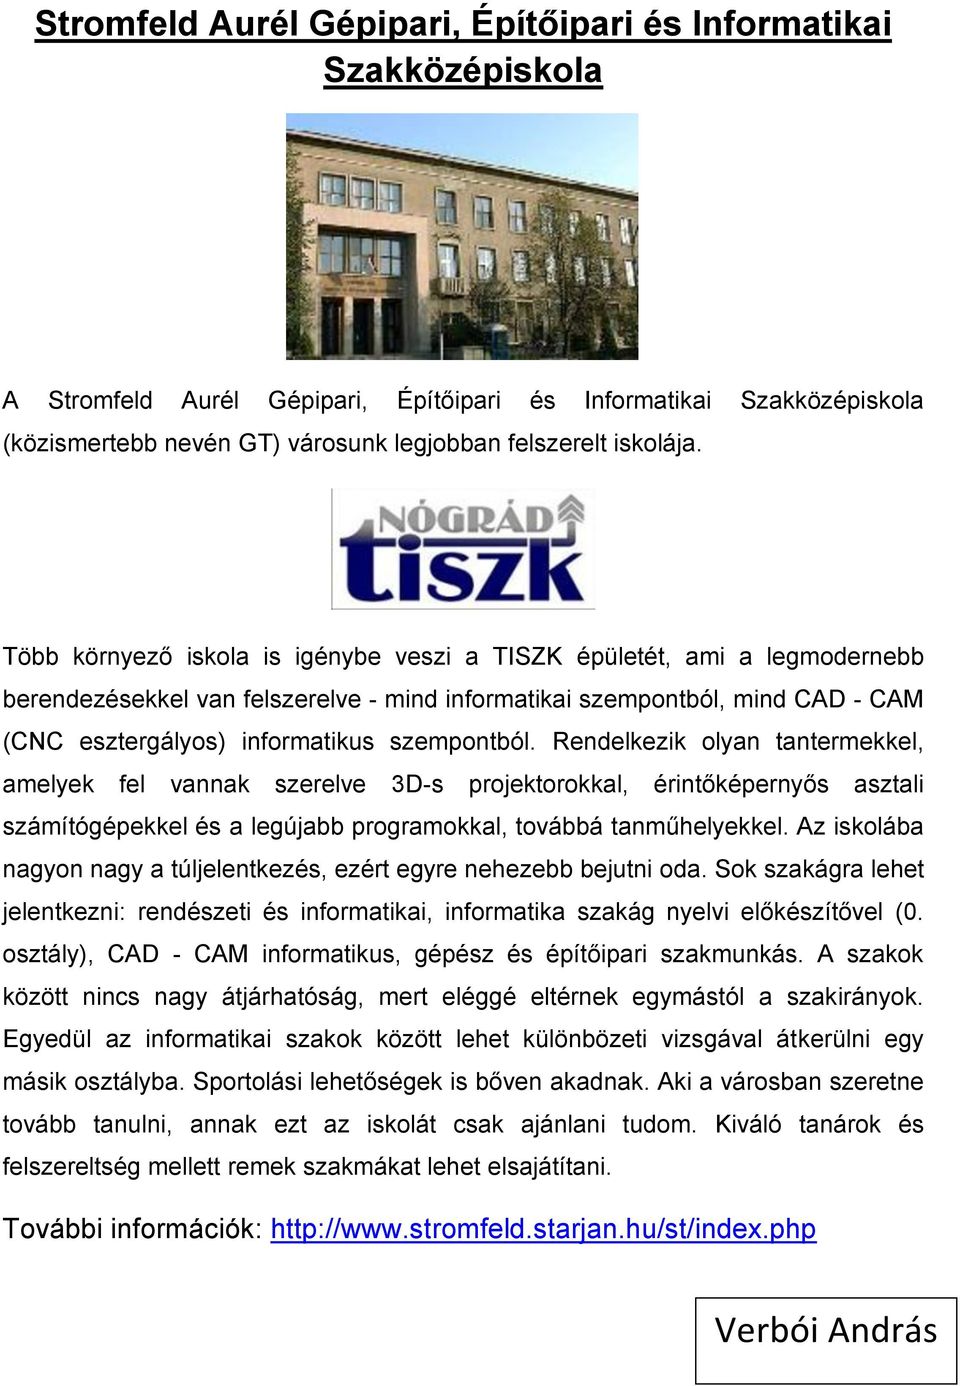 Több környező iskola is igénybe veszi a TISZK épületét, ami a legmodernebb berendezésekkel van felszerelve - mind informatikai szempontból, mind CAD - CAM (CNC esztergályos) informatikus szempontból.